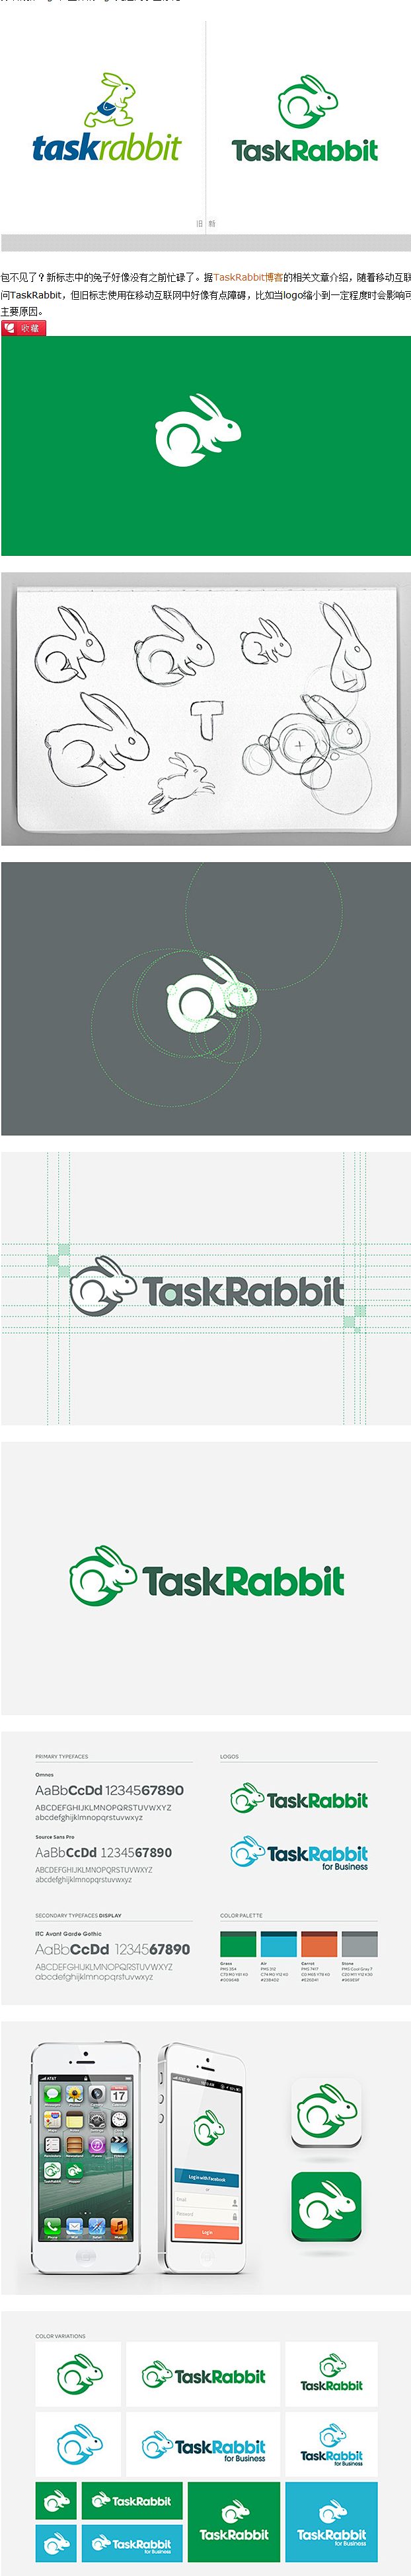 威客平台TaskRabbit启用新标志_...